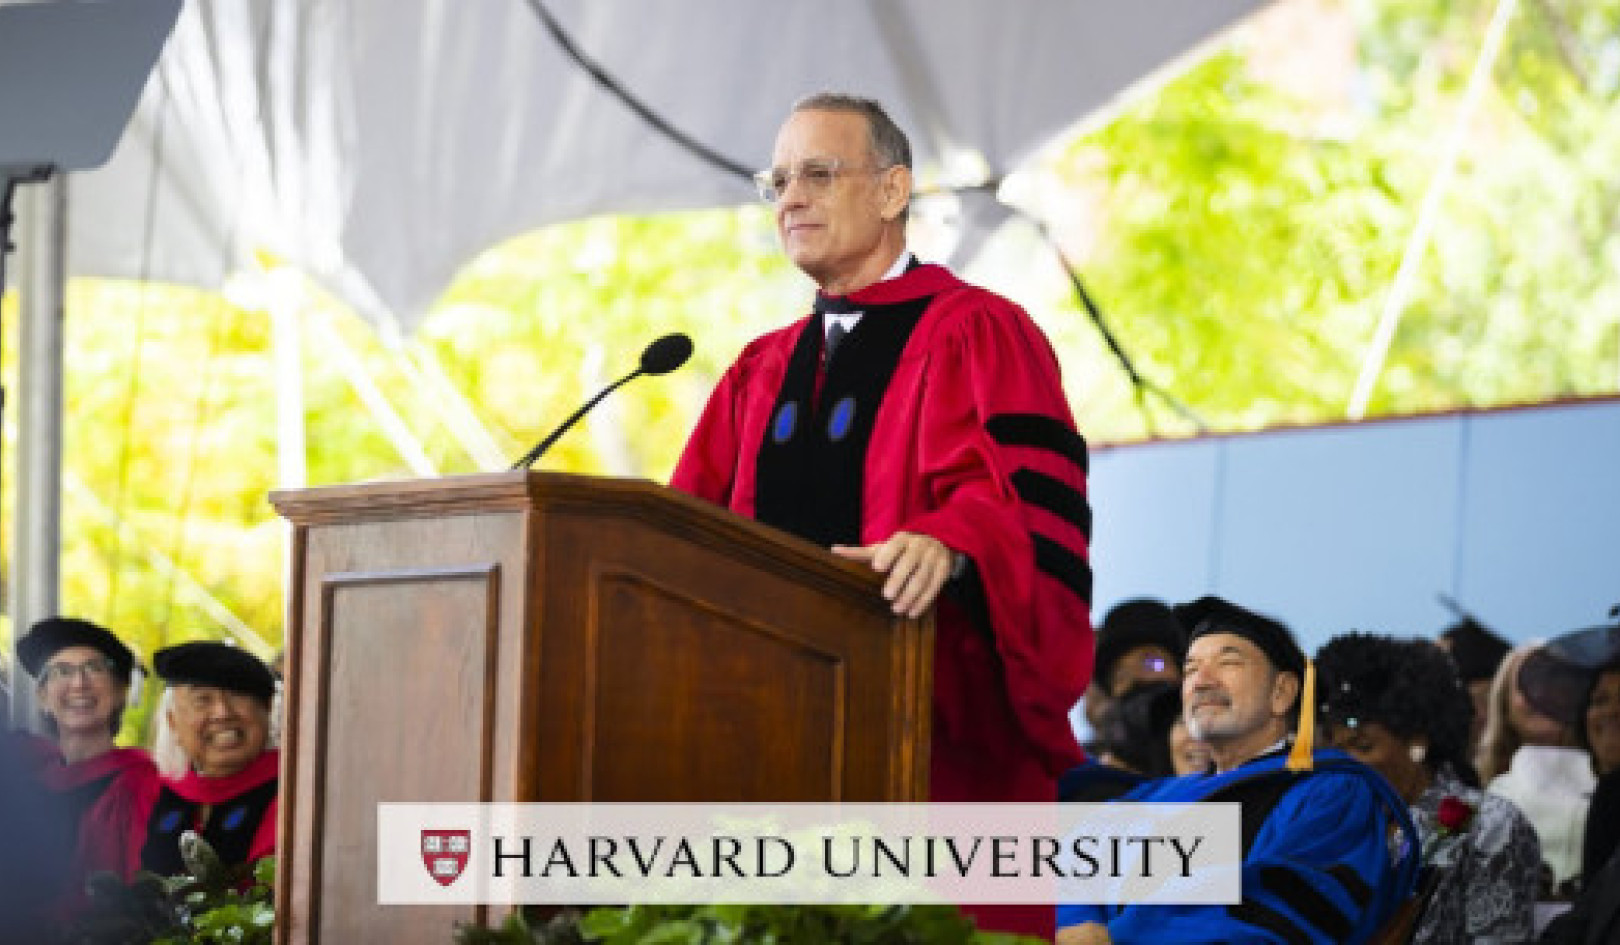 טום הנקס נותן השראה לבוגרי הרווארד לאמץ את האמת, הצדק והדרך האמריקאית